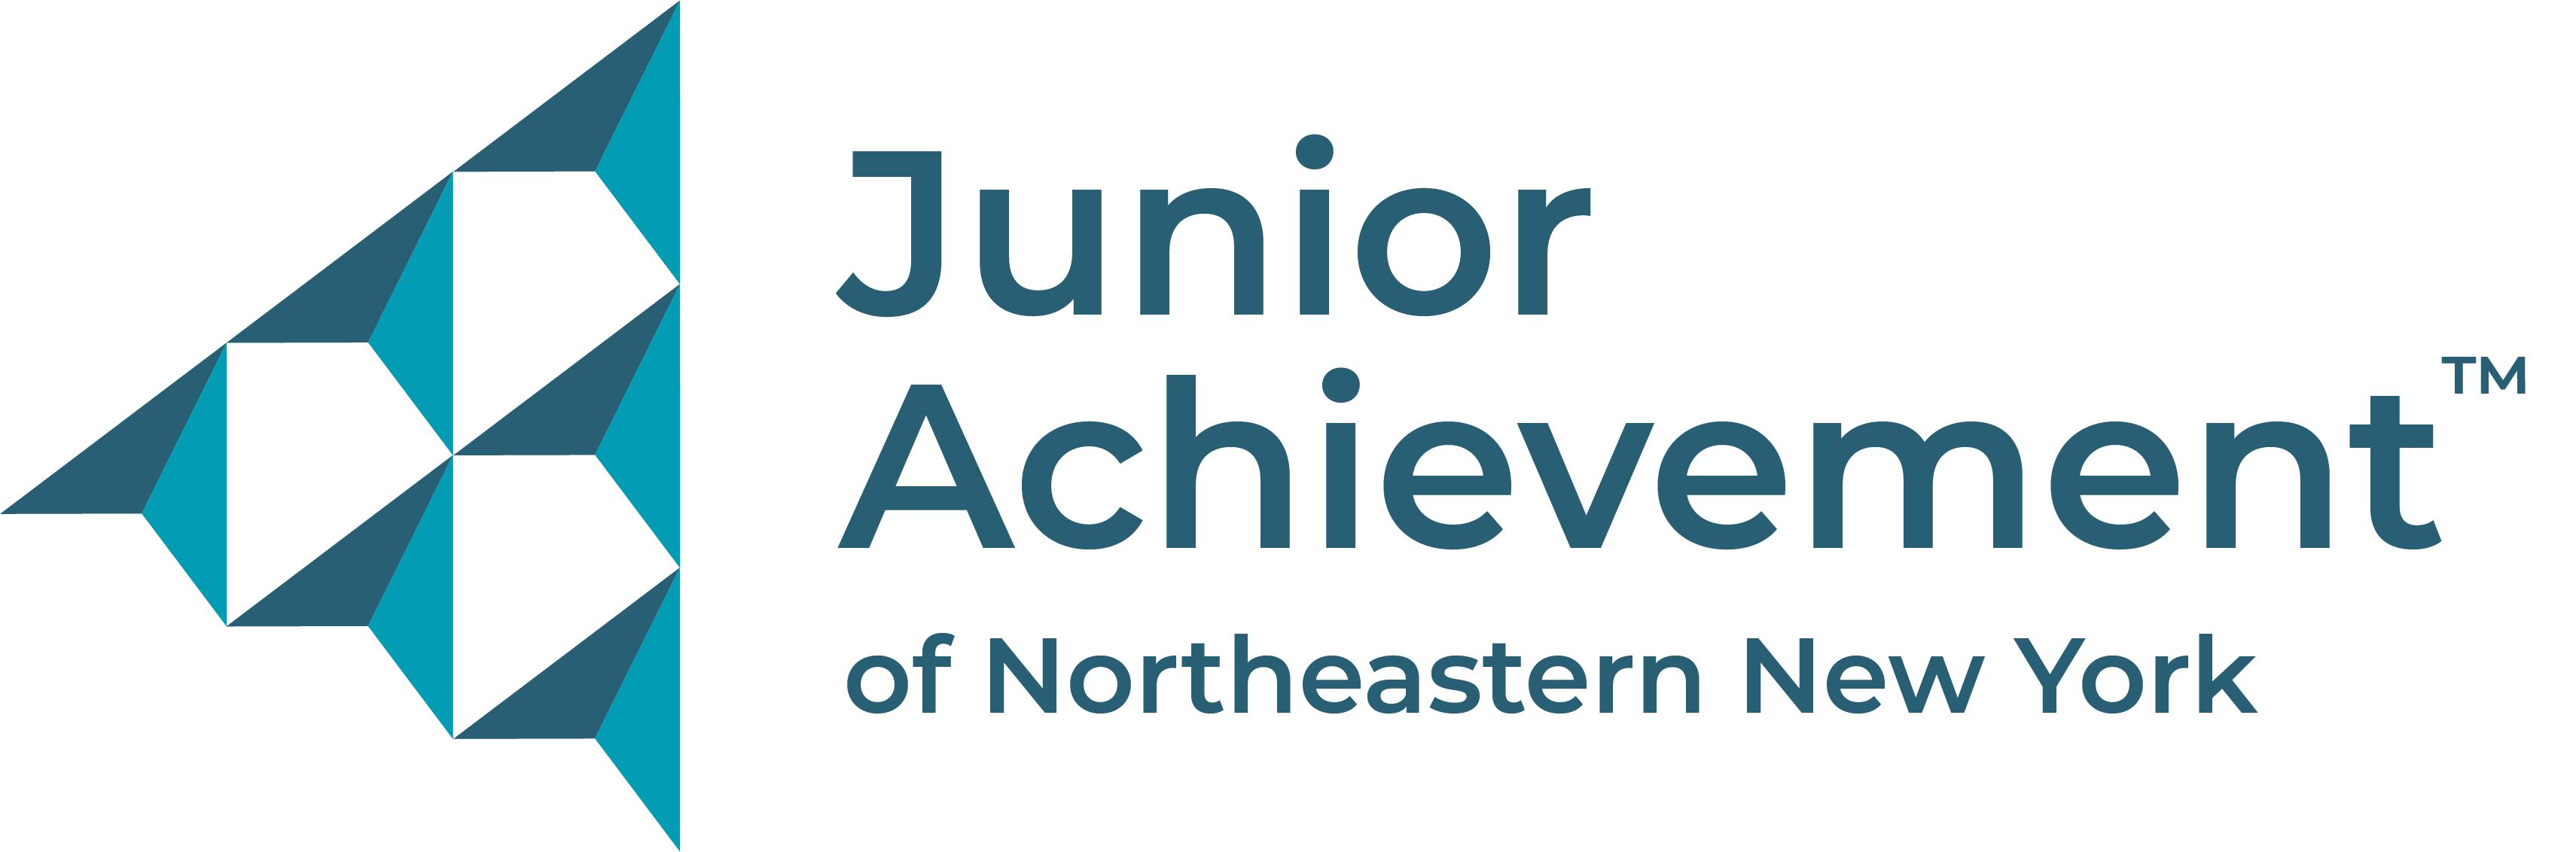 Junior Achievement of Northeastern New York